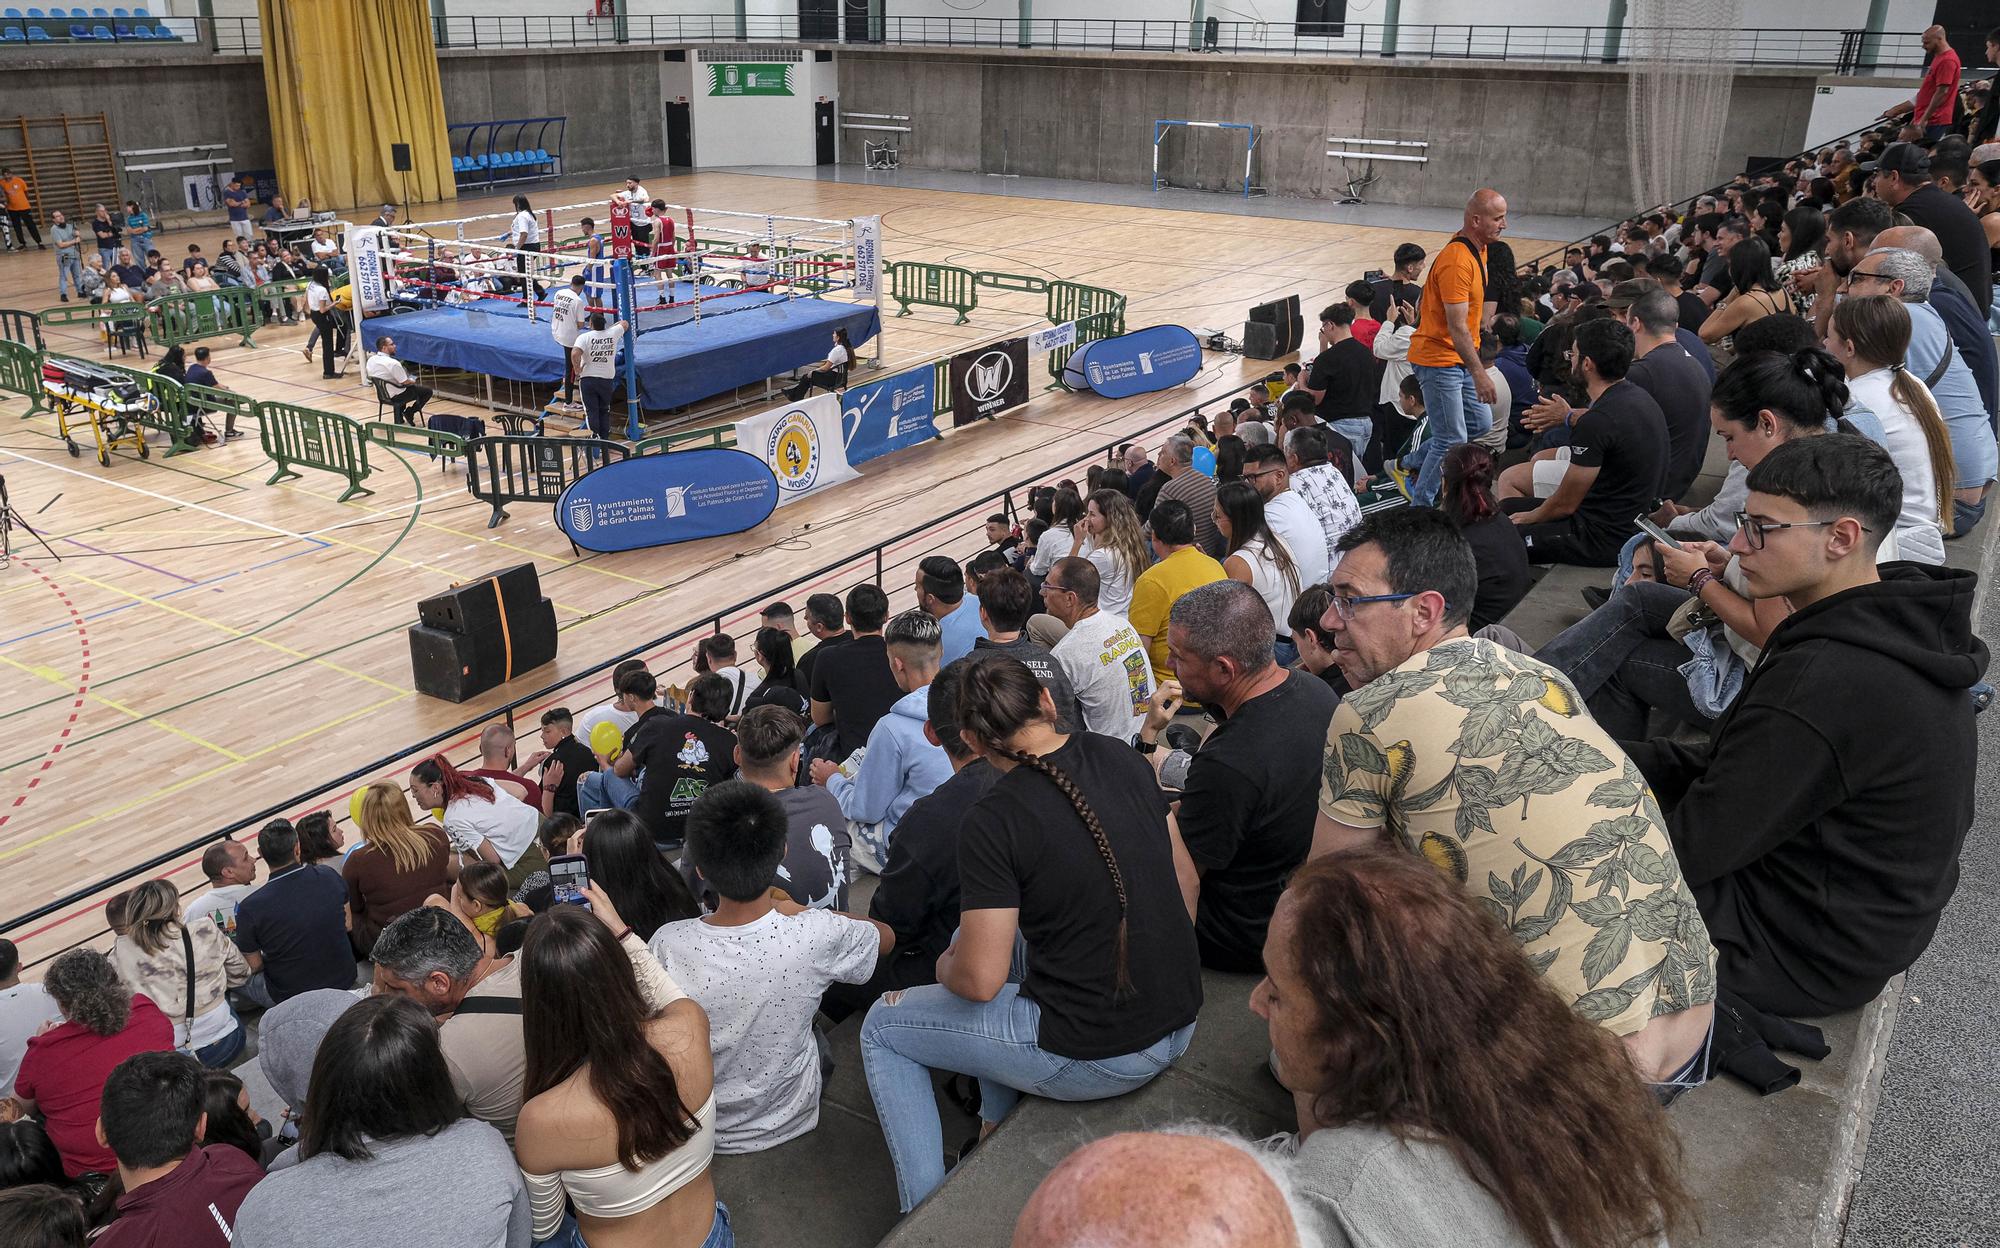 Campeonato de Canarias de Boxeo en el Pabellón Juan Beltrán Sietta